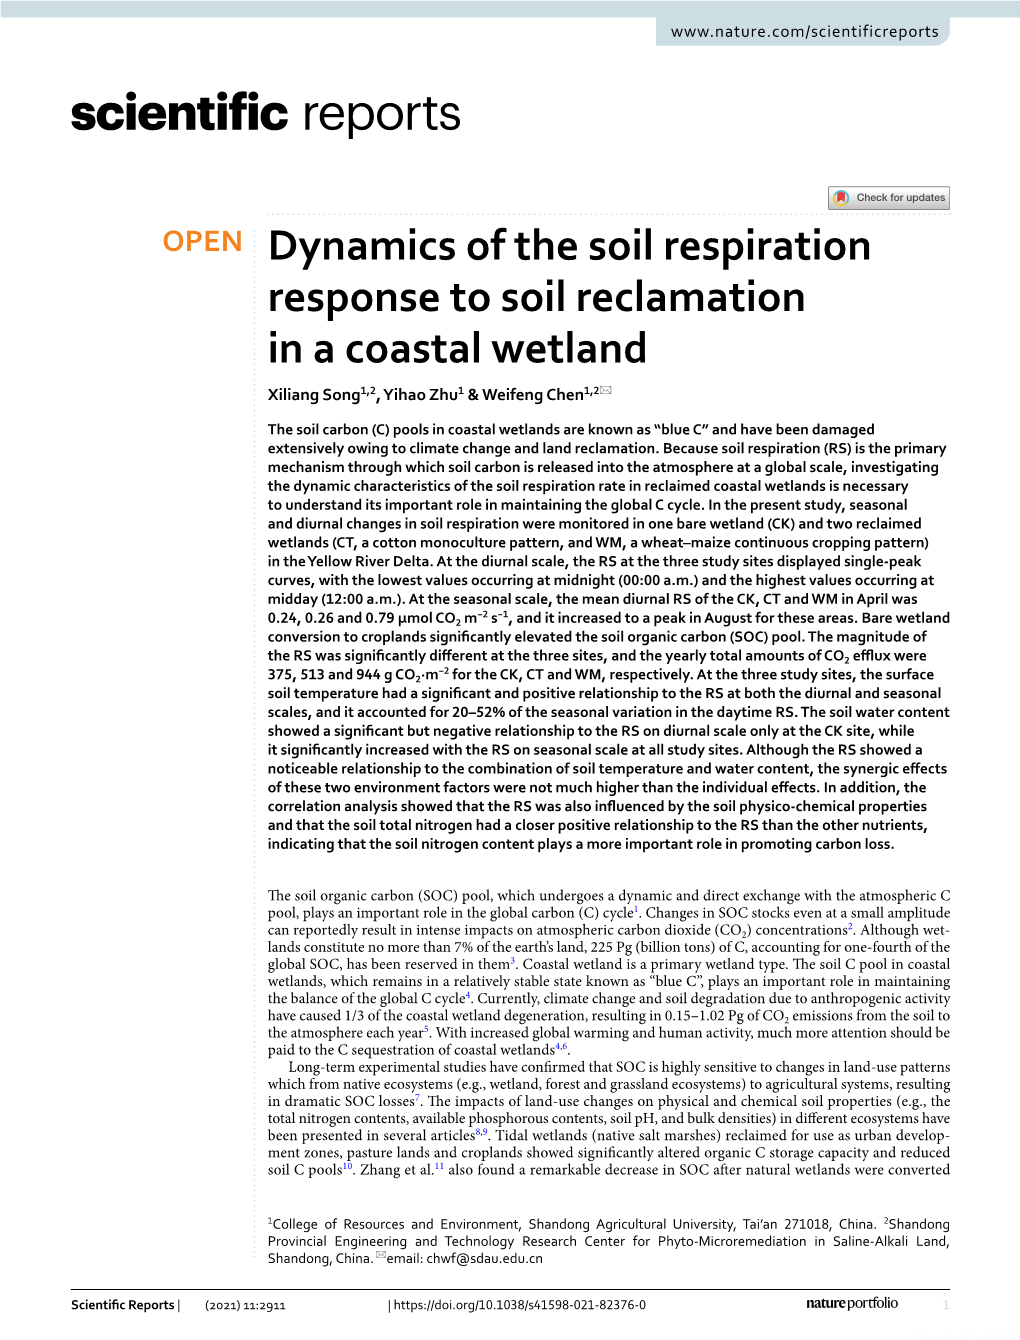 Dynamics of the Soil Respiration Response to Soil Reclamation in a Coastal Wetland Xiliang Song1,2, Yihao Zhu1 & Weifeng Chen1,2*